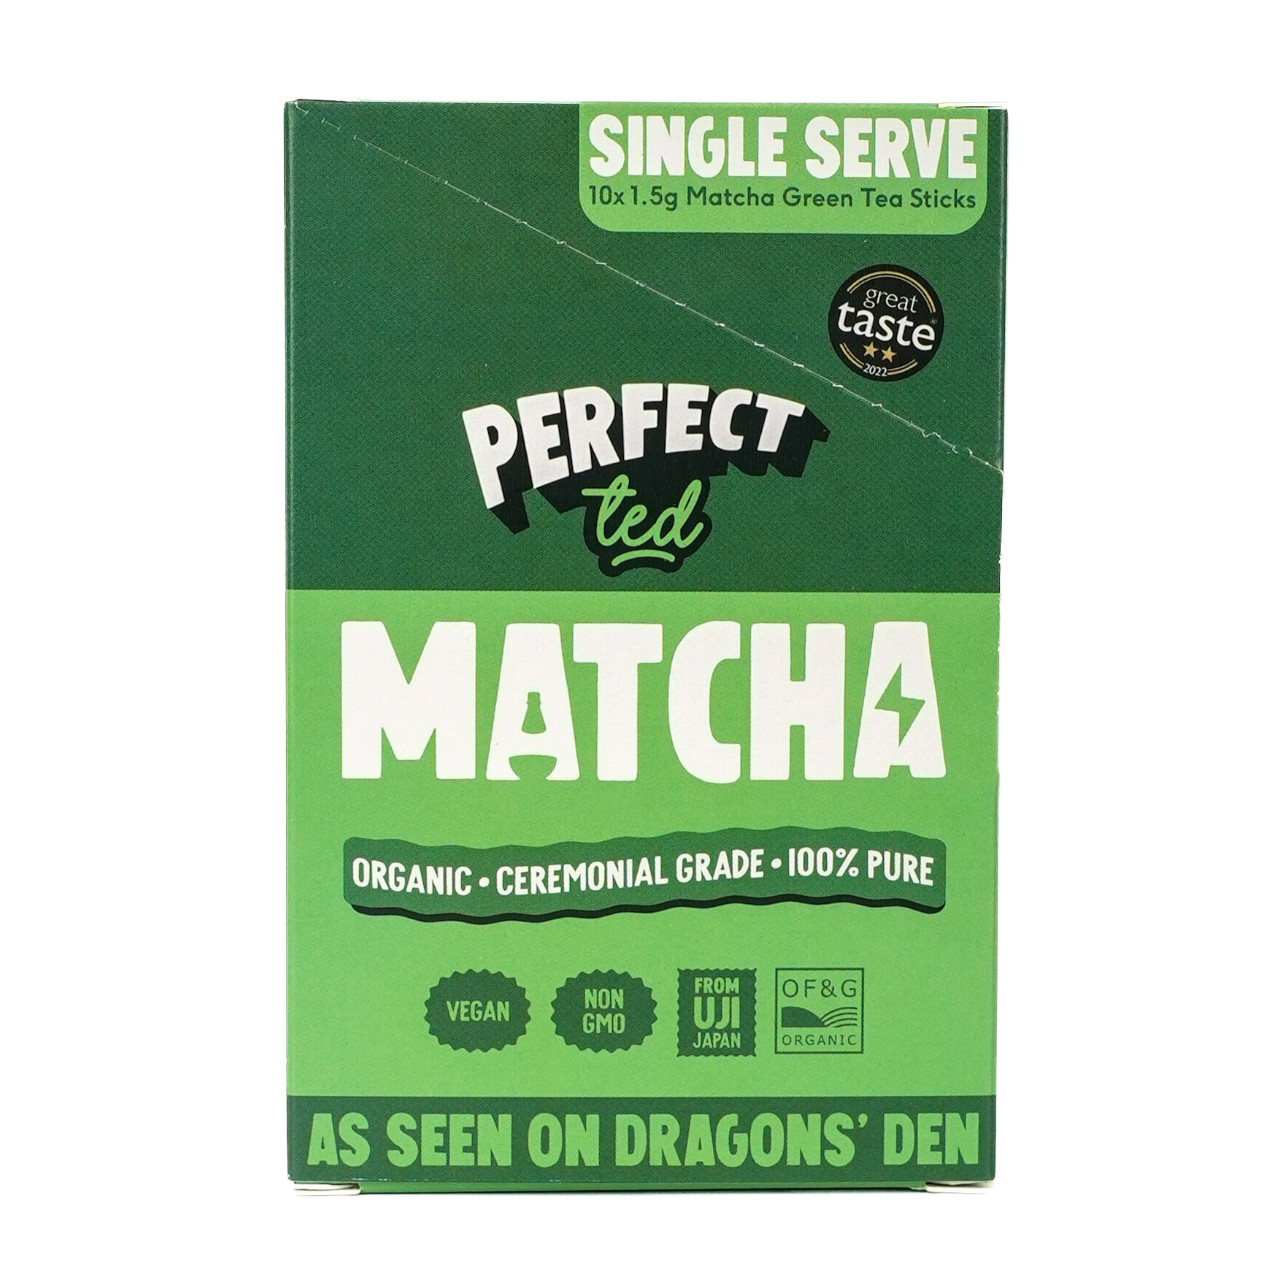 GREEN LEAF MATCHA - 100% ORGANIC PURE GREEN TEA MATCHA POWDER. 30  SERVINGS!!